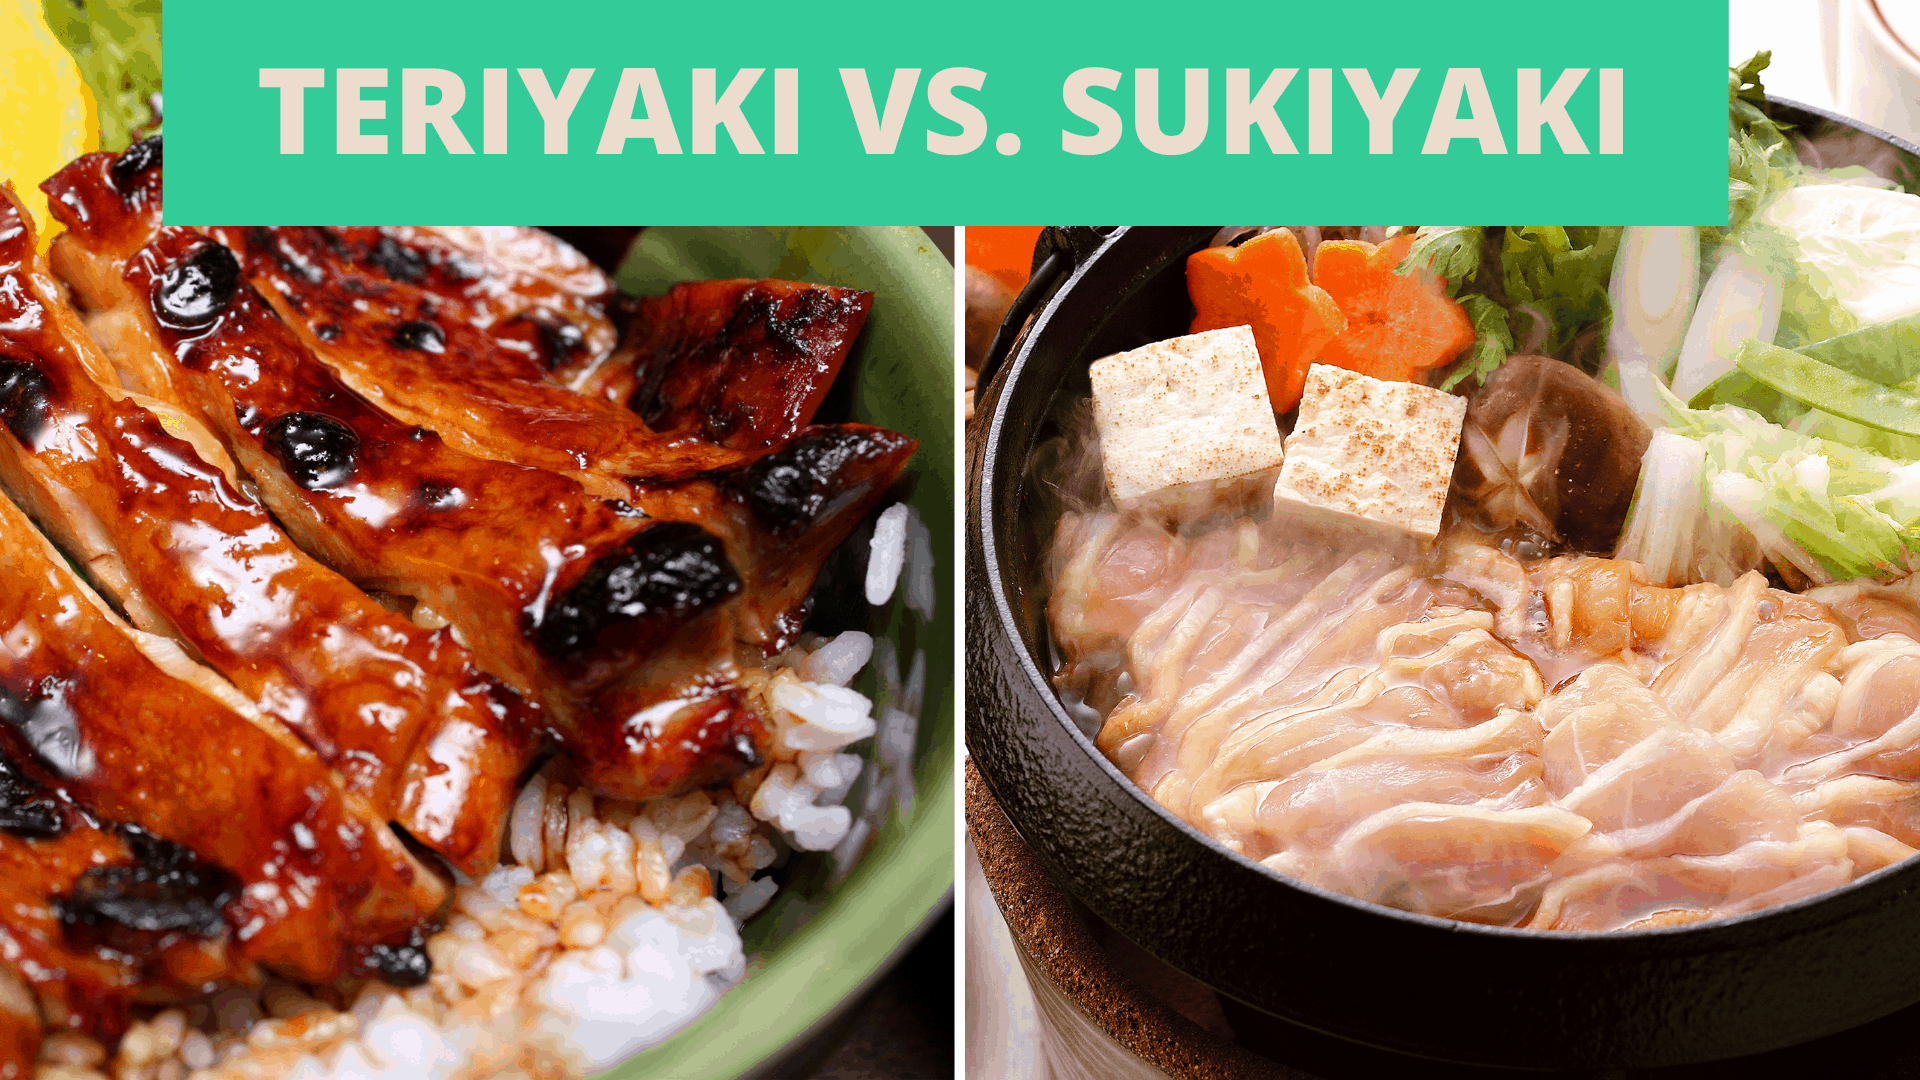 comparação teriyaki vs sukiyaki entre estes dois pratos japoneses clássicos